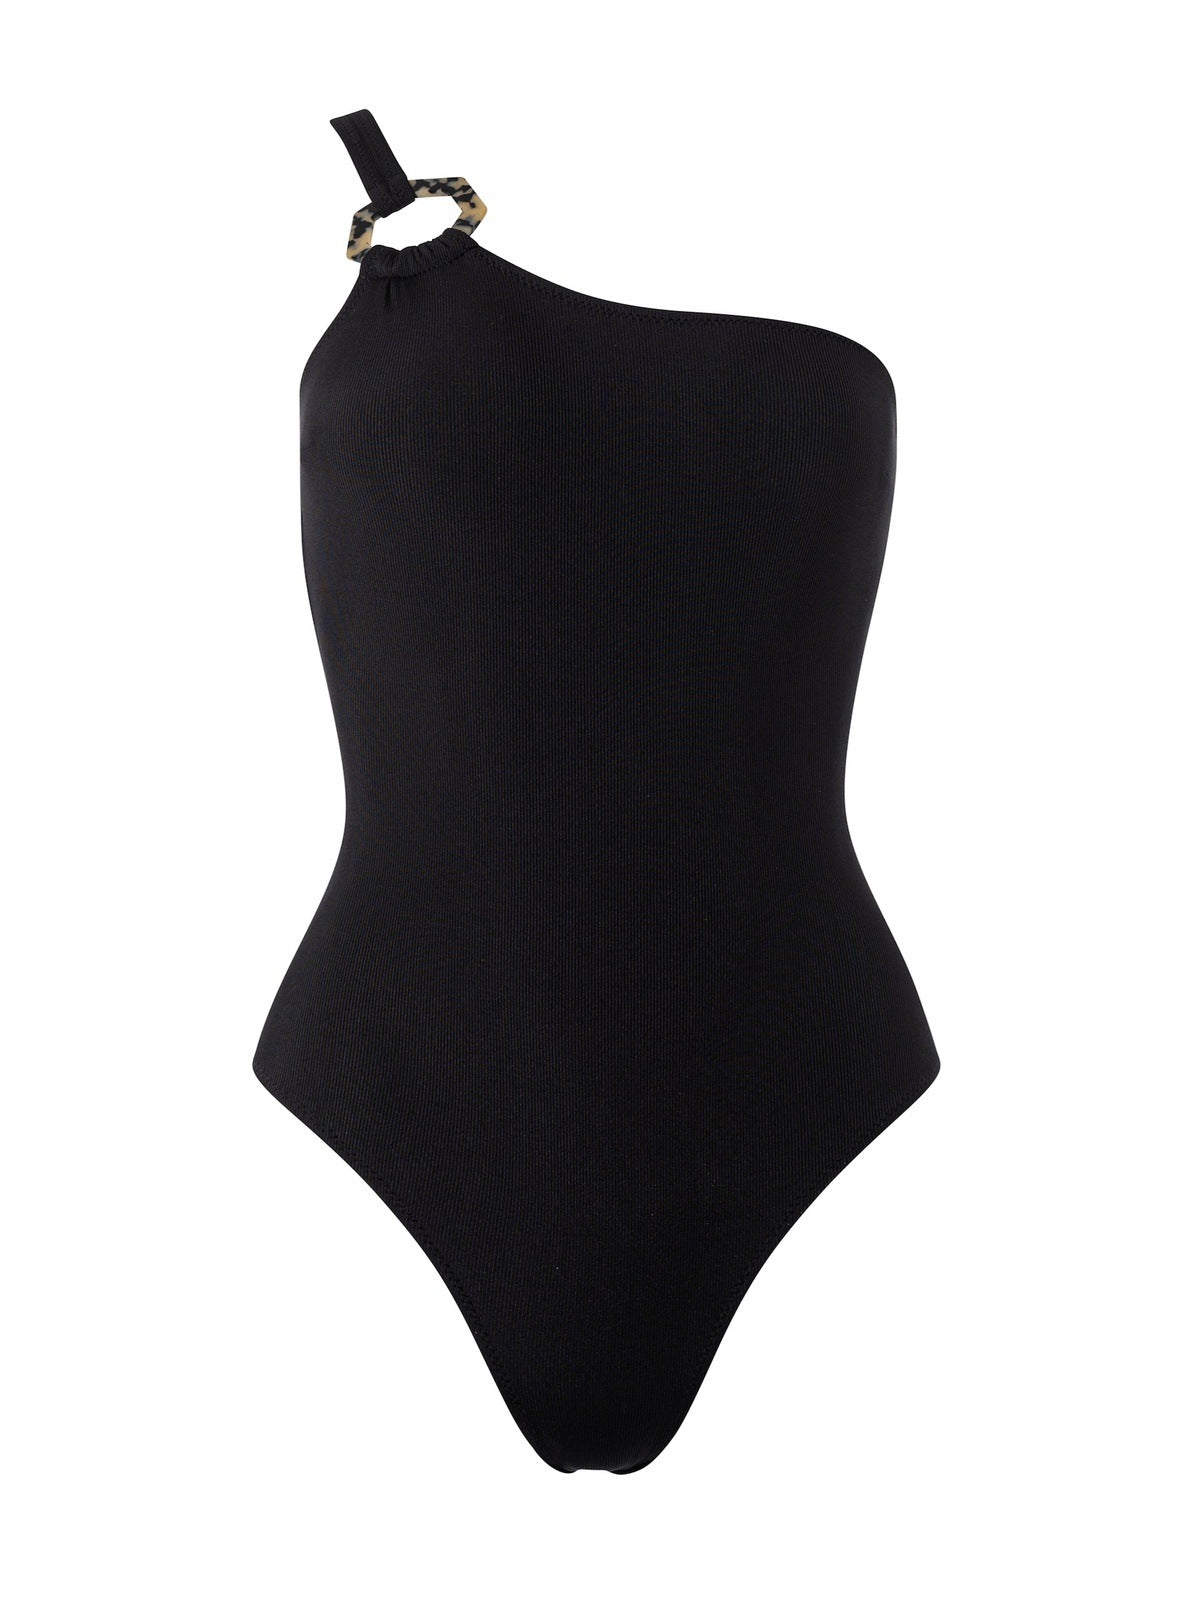 PRE-ORDER Veneta swimsuit in Bianco